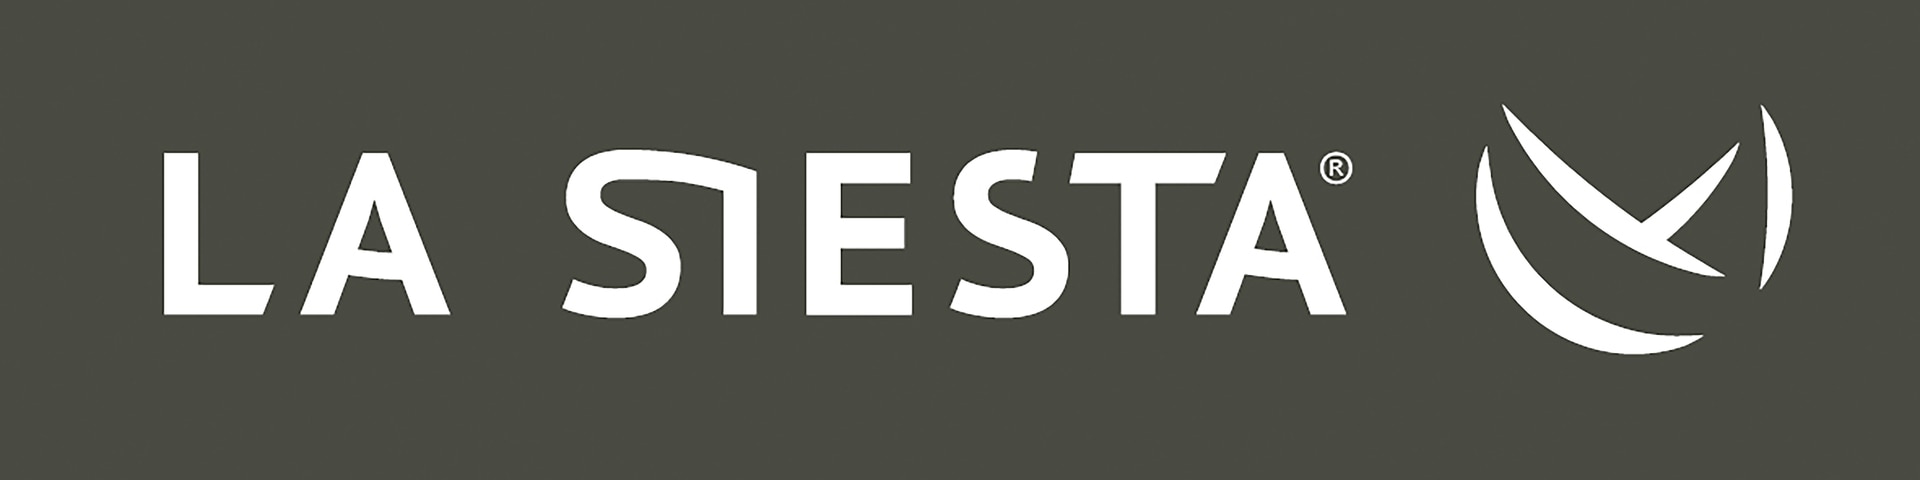 LA SIESTA-logo